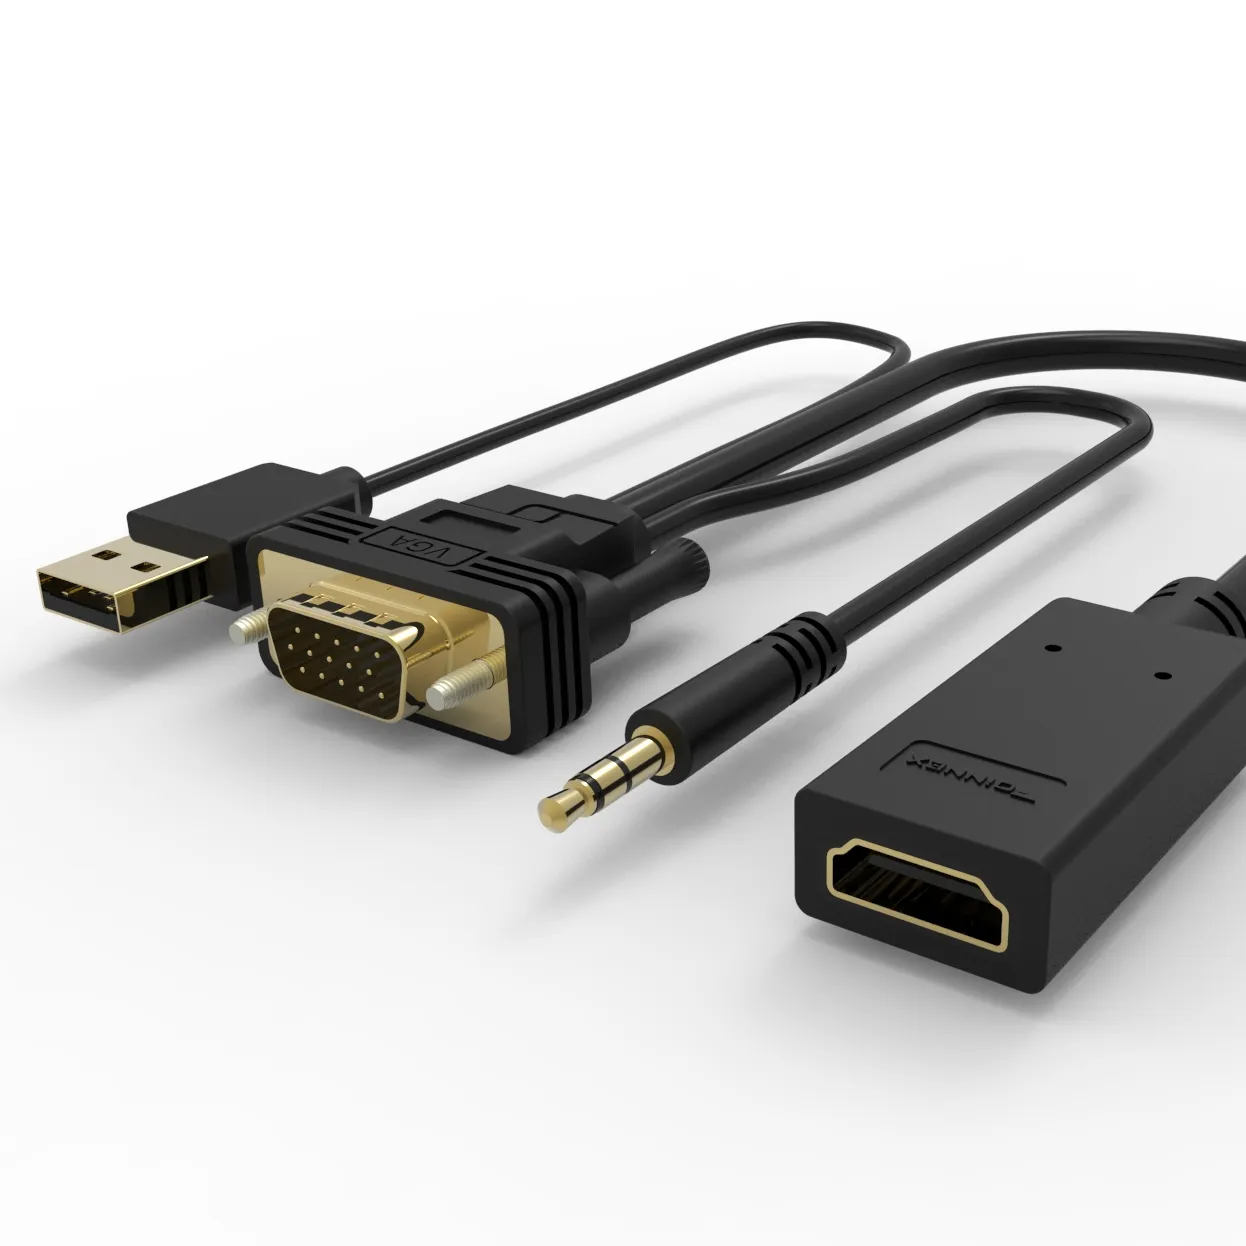 สายแปลง VGA เป็น HDMI ตัวผู้เป็นตัวแปลงอะแดปเตอร์ตัวเมียพร้อมเสียง3.5มม. และตัวแปลงไฟ USB 5V 1080P